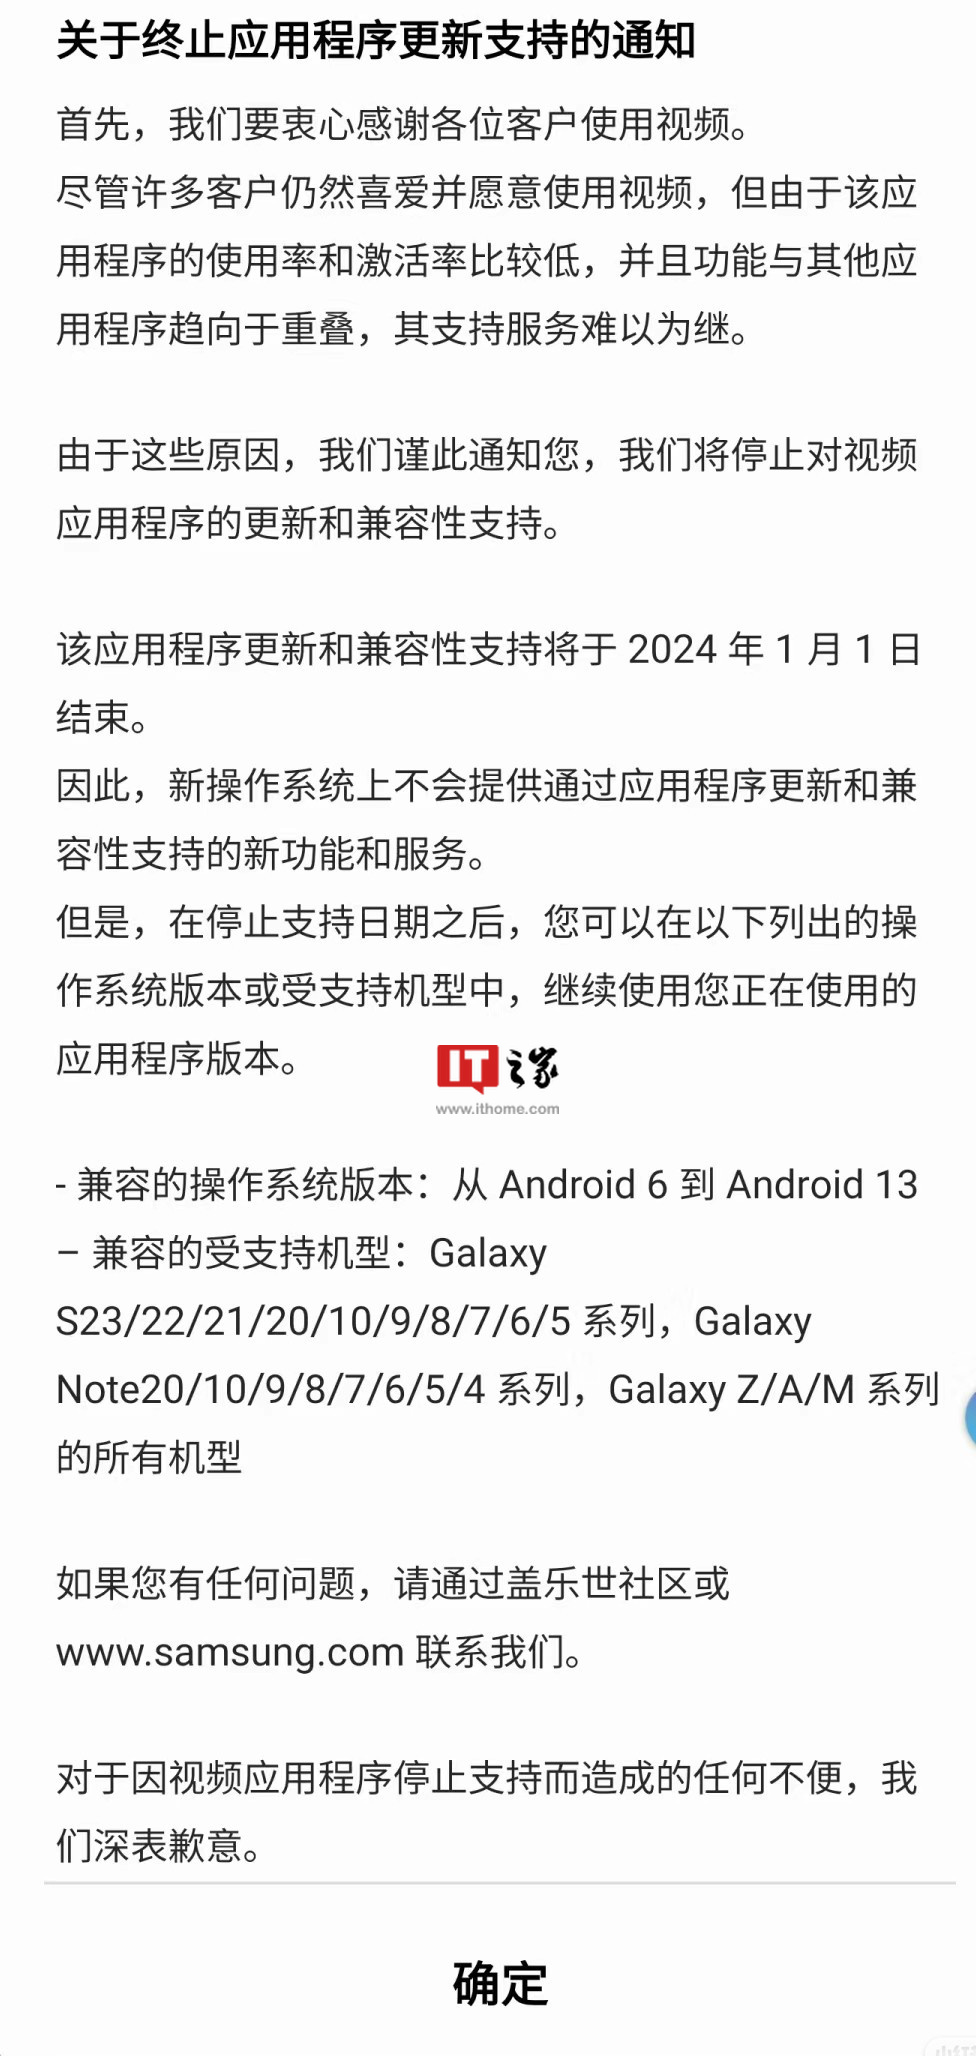 三星 Galaxy 手机 One UI 内置视频 App 将于明年停止更新和支持